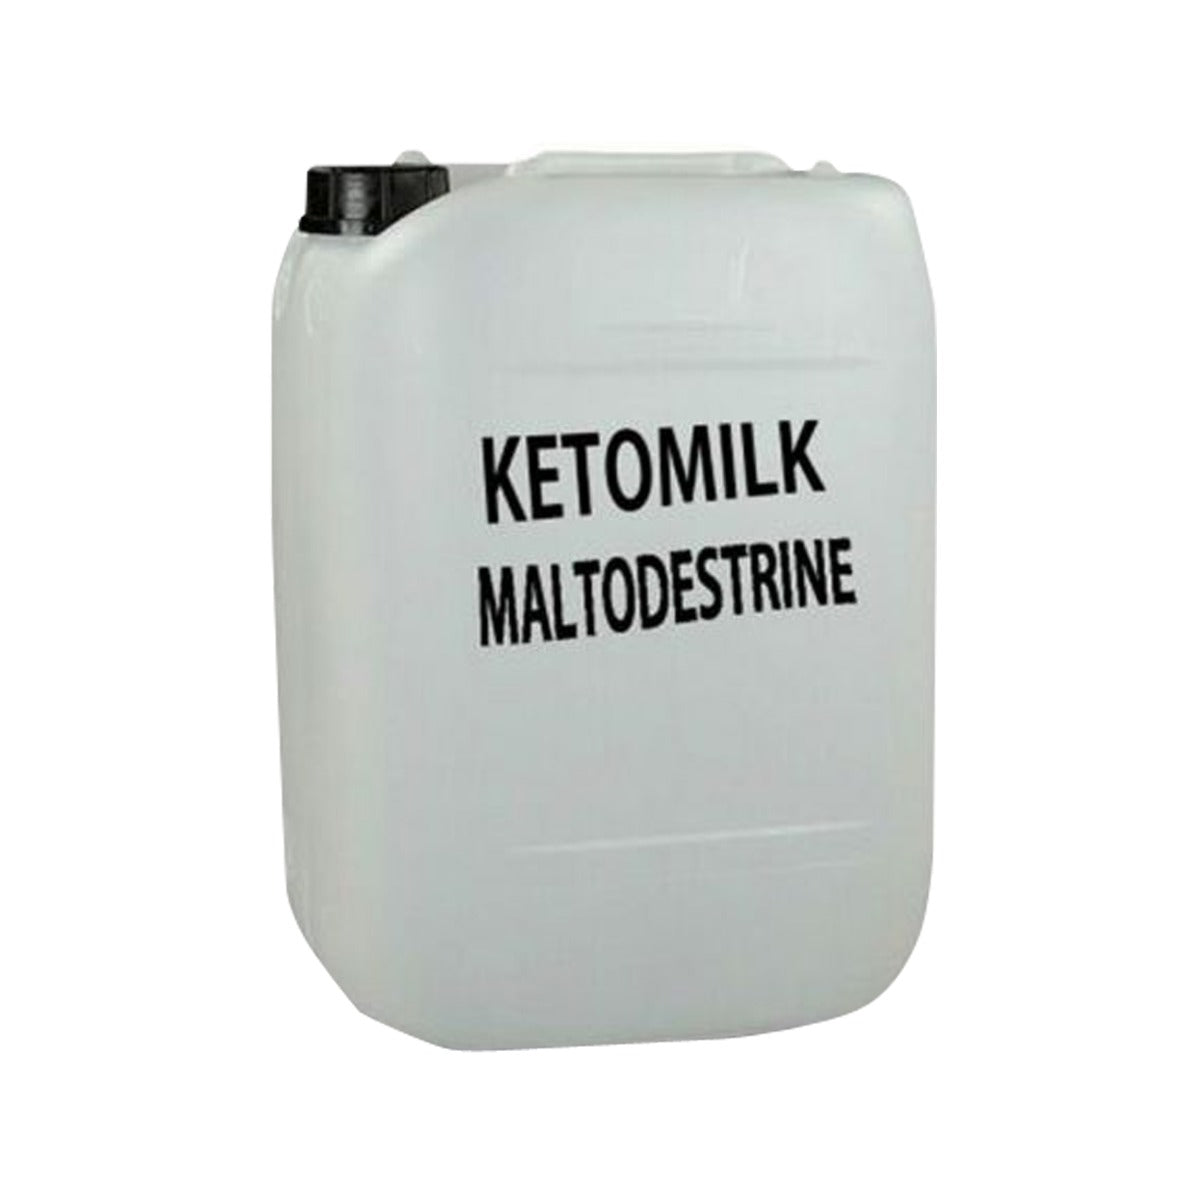 Ketomilk Maltodestrine - Integratore Nutrizionale per una Dieta Chetogenica